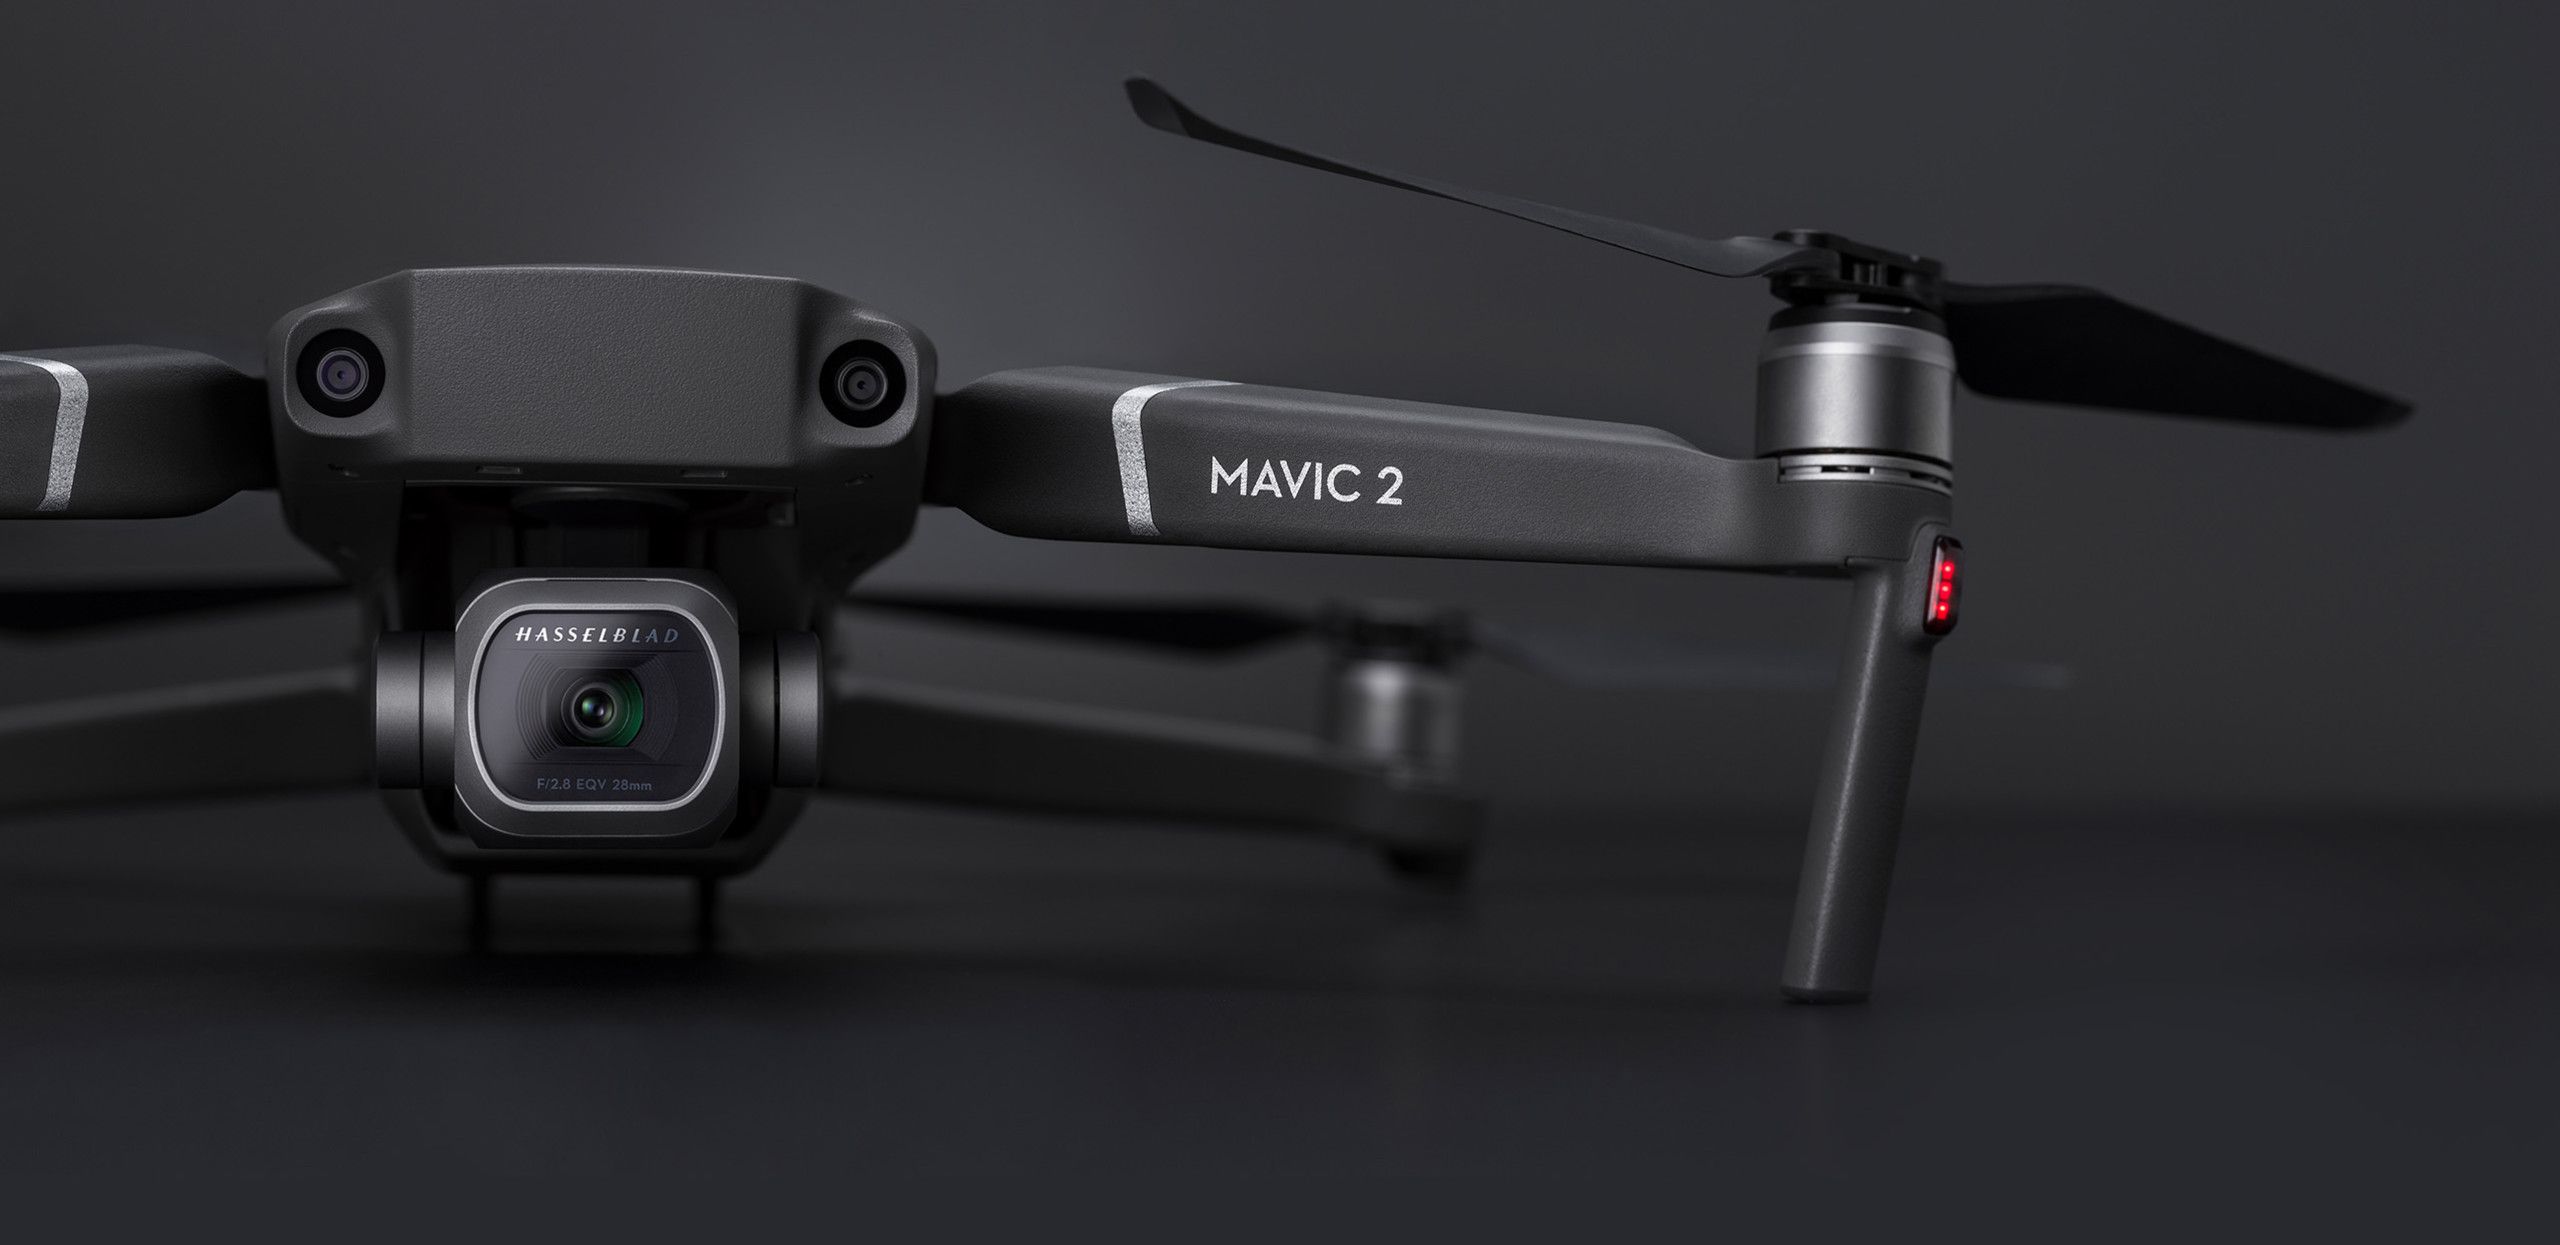 Infocus – DJI Mavic 2 Enterprise: An Advanced Portable Thermal Drone Solution